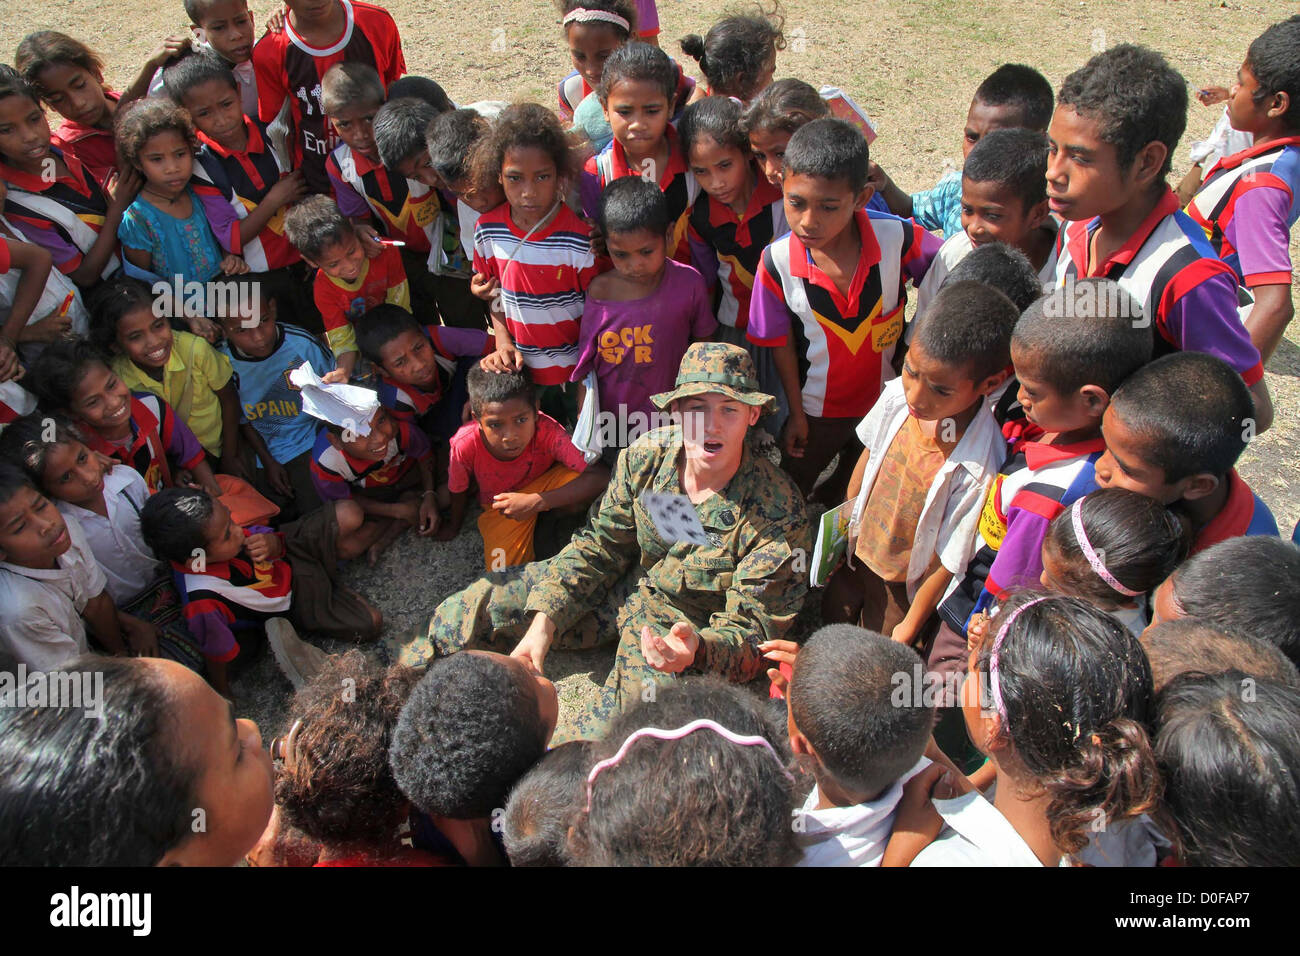 Un ayudante médico del Hospital de la Marina estadounidense muestra a los niños una tarjeta trick durante una misión humanitaria, 12 de octubre de 2012 en una remota aldea en Timor Oriental. Foto de stock